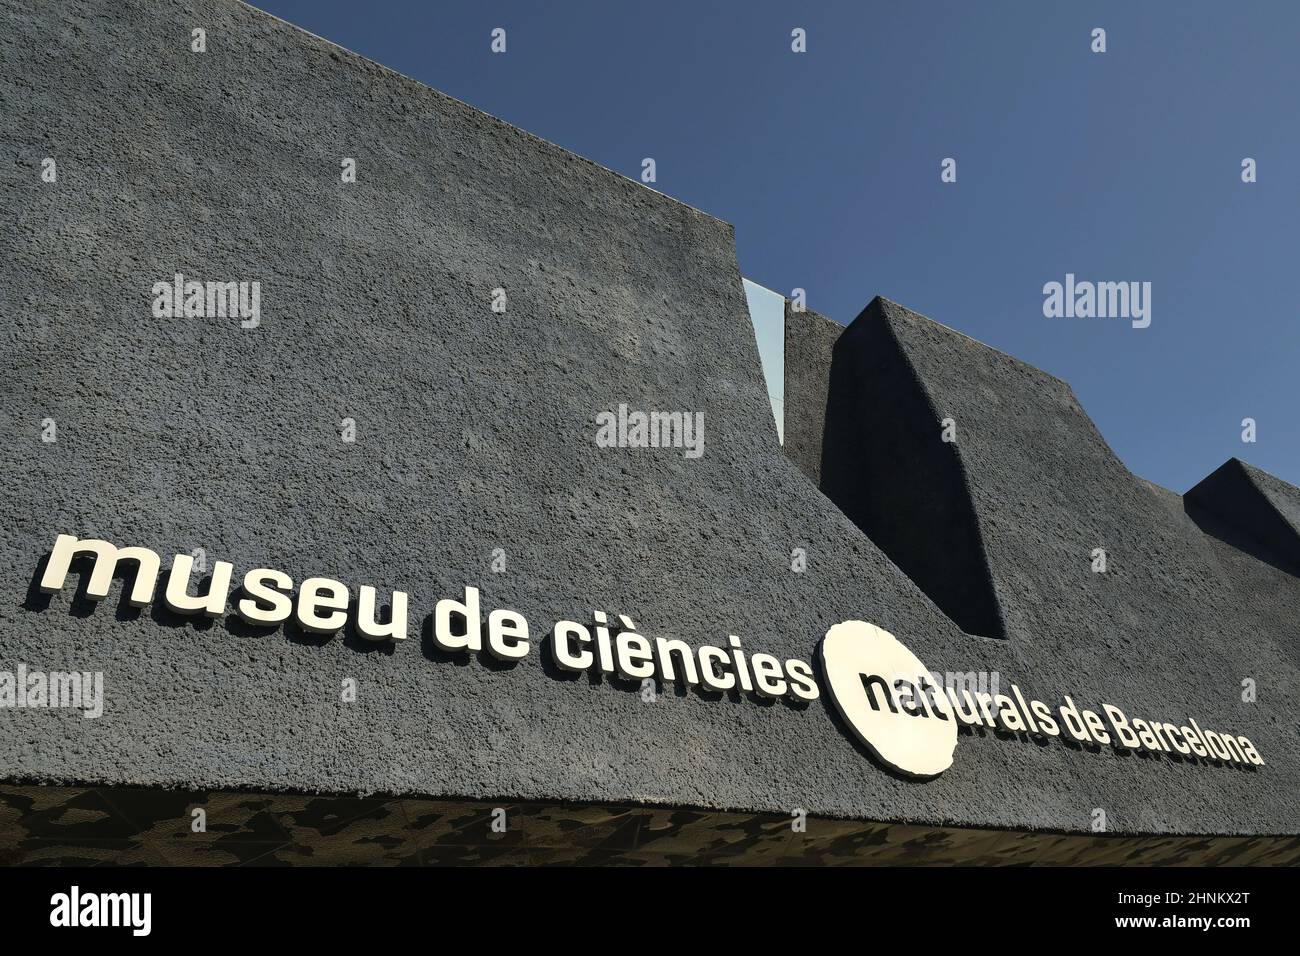 Museu Blau - esterno del museo di scienze naturali a Barcellona, Spagna. Architettura moderna e distintiva progettata dagli architetti Herzog e de Meuron. Foto Stock